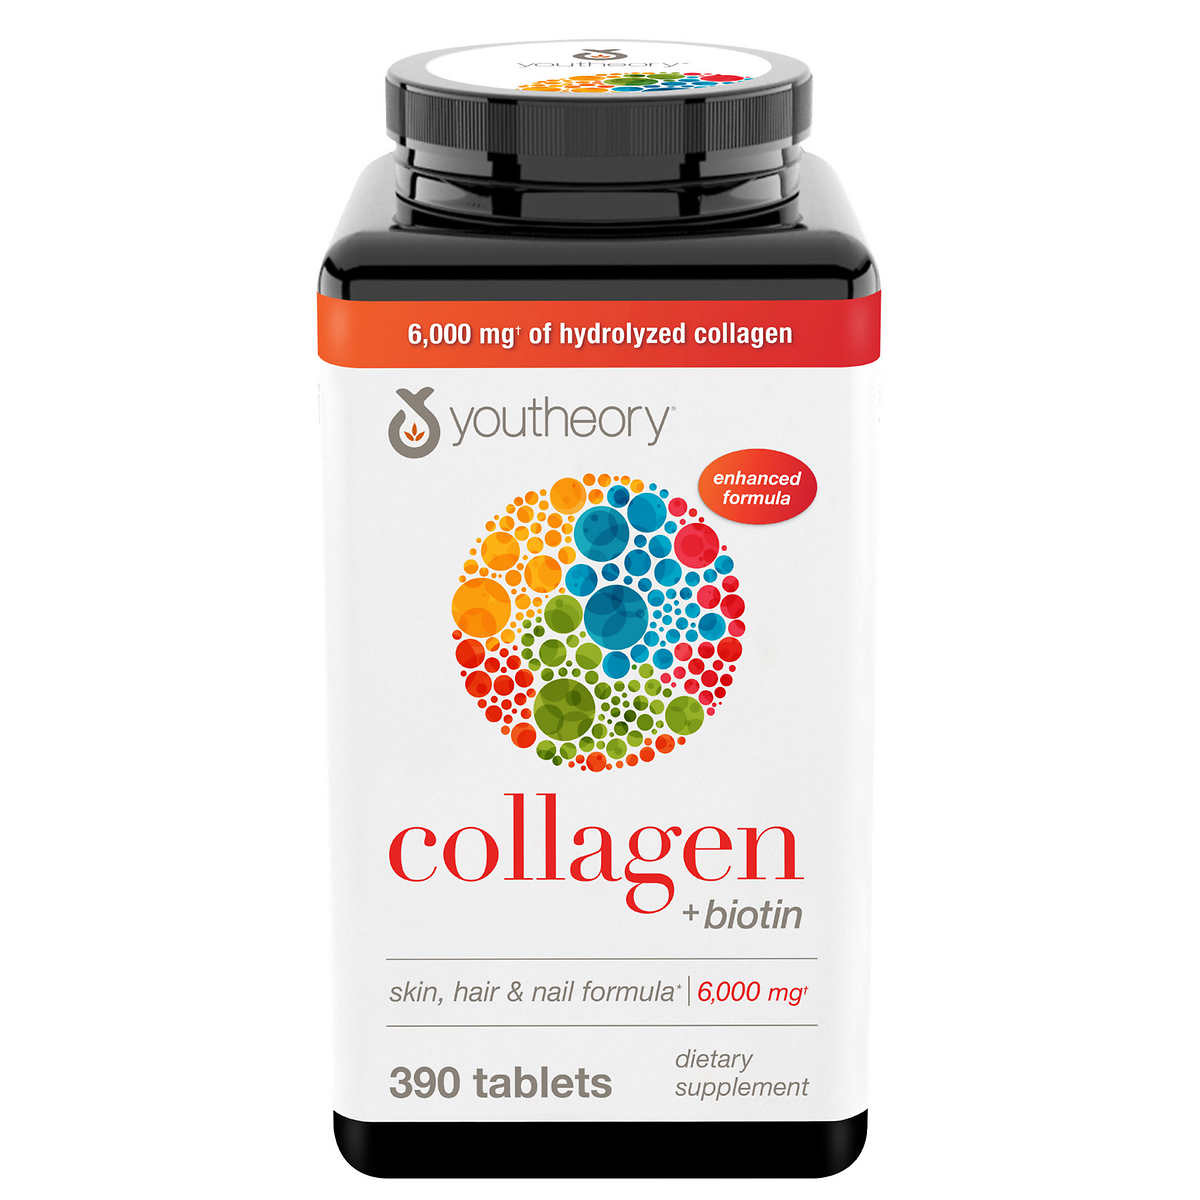 Sử dụng collagen 6000mg có mang lại hiệu quả nhanh chóng không?

